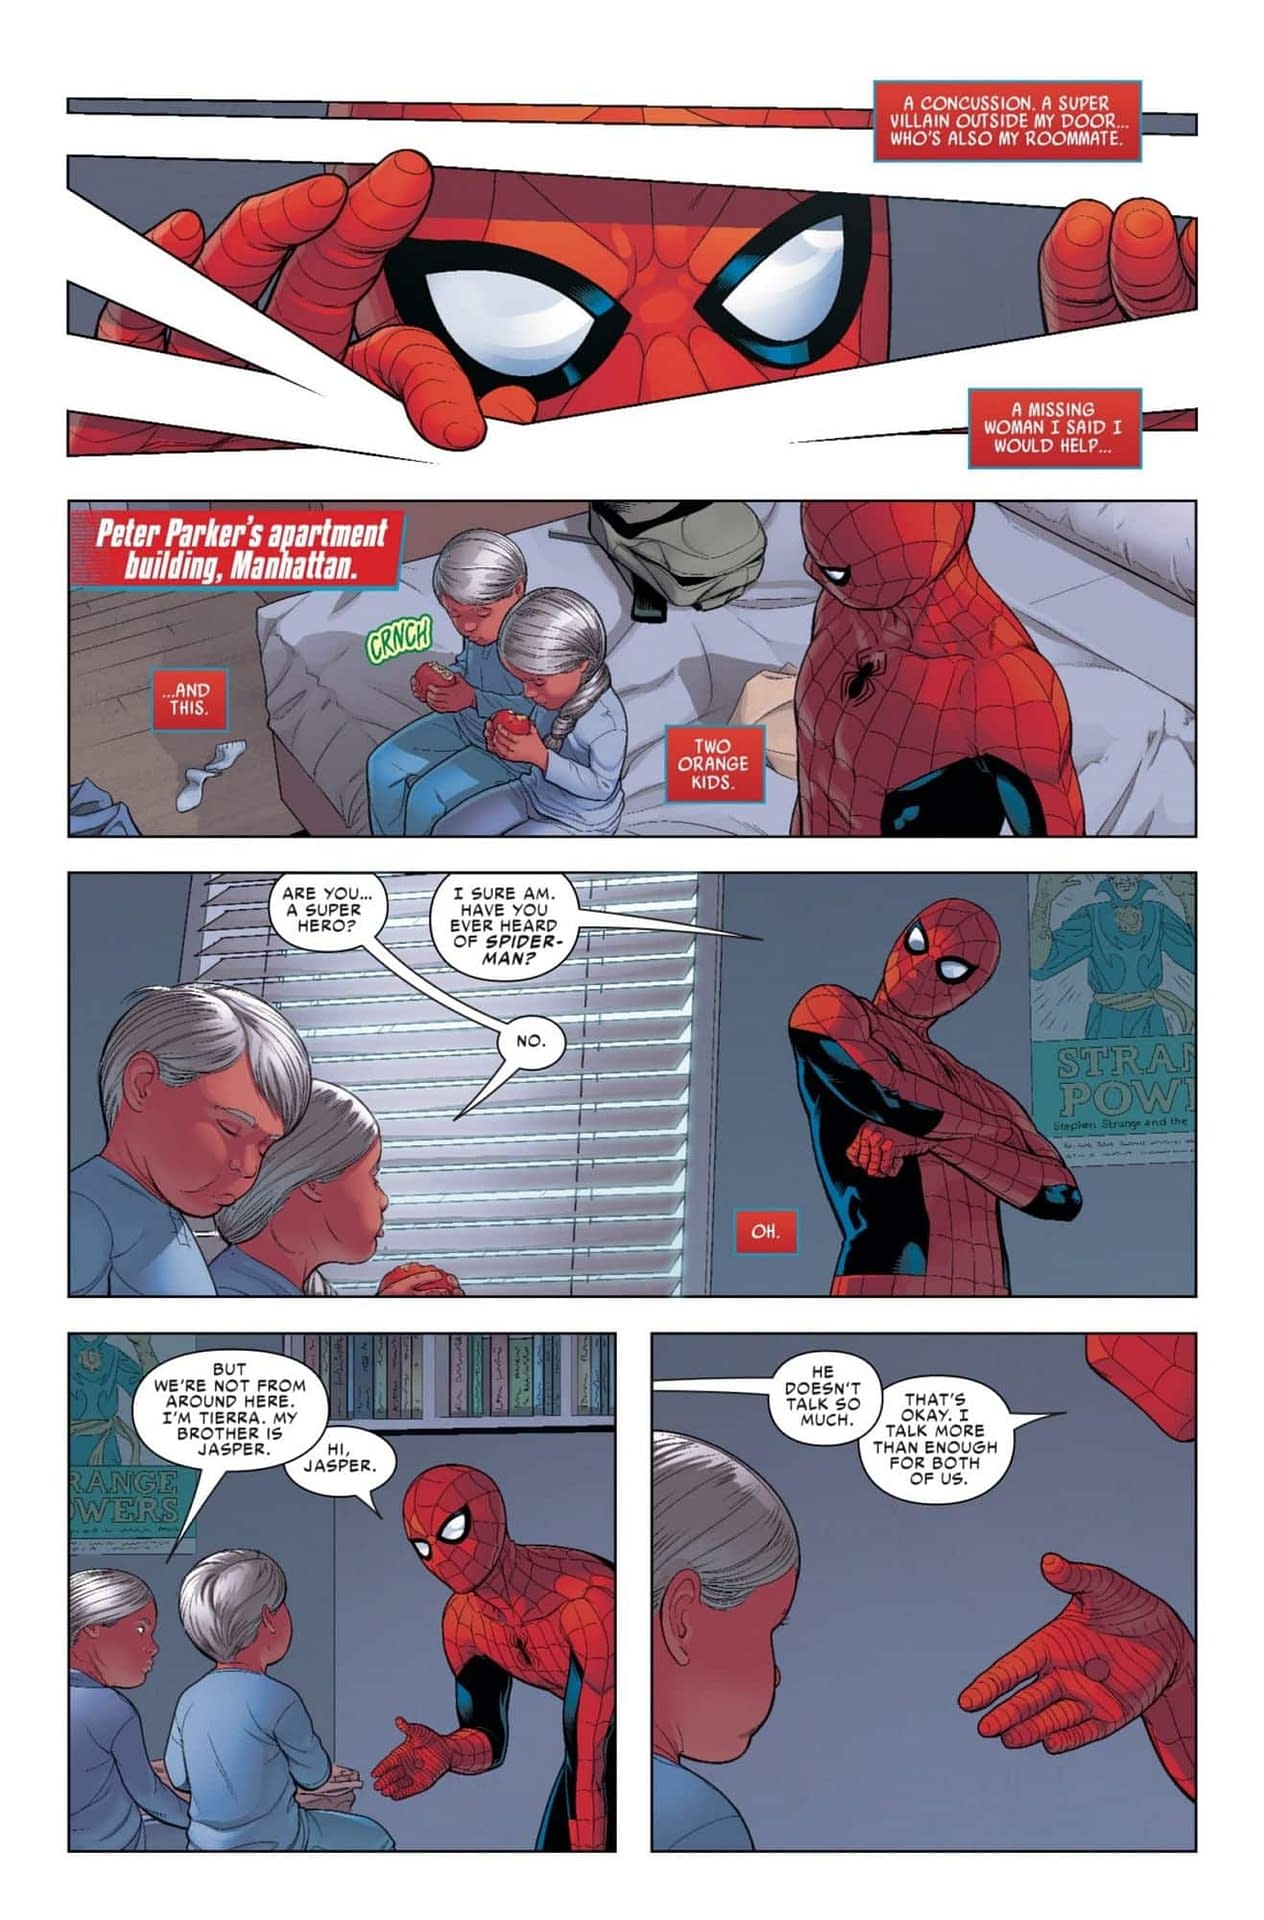 Judging Boomerang's Manhood in Next Week's Friendly Neighborhood Spider-Man #2